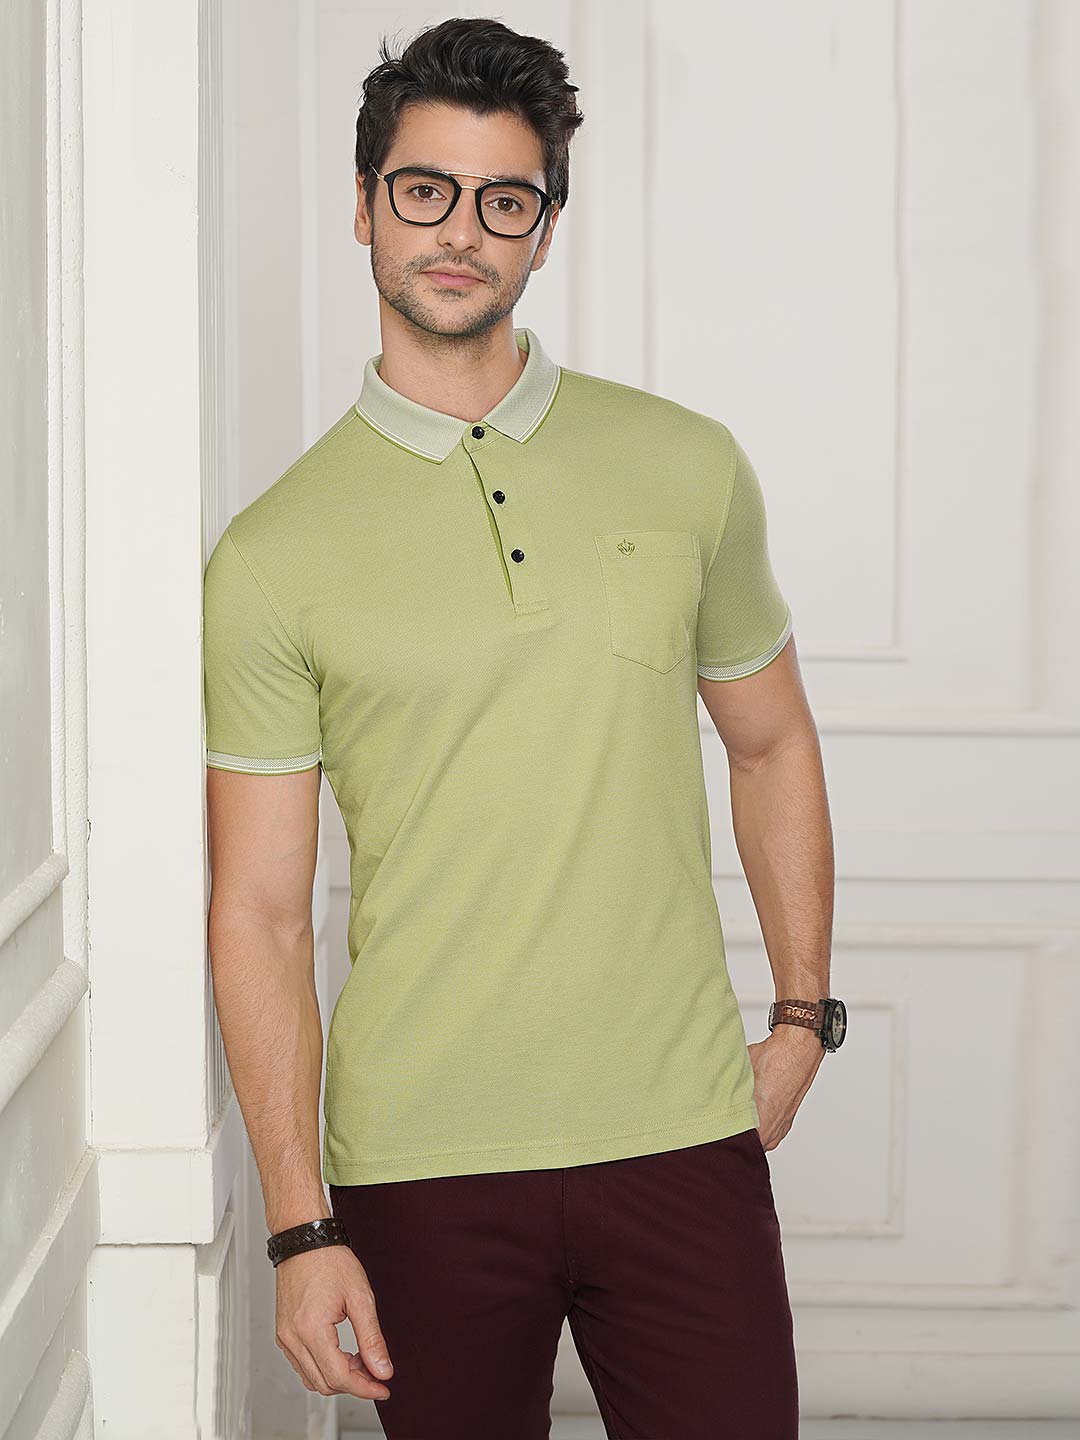 light green shirt mens